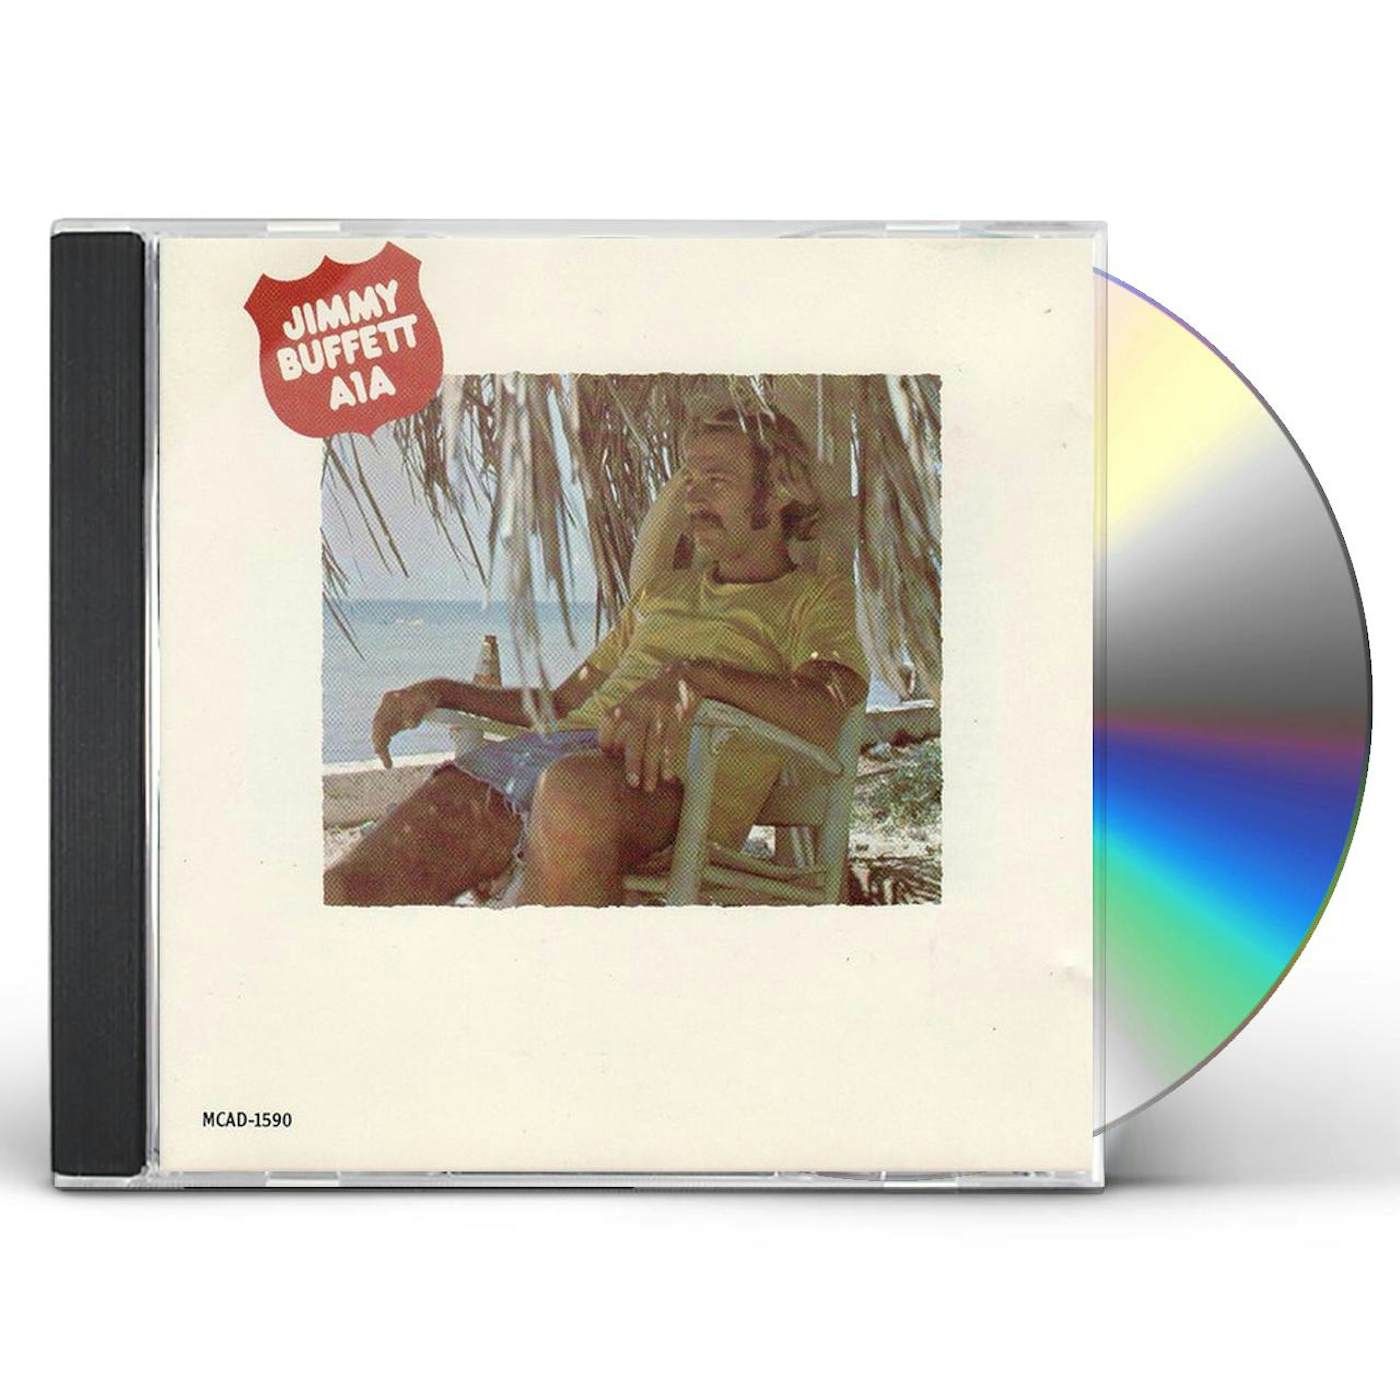 Jimmy Buffett A-1-A CD